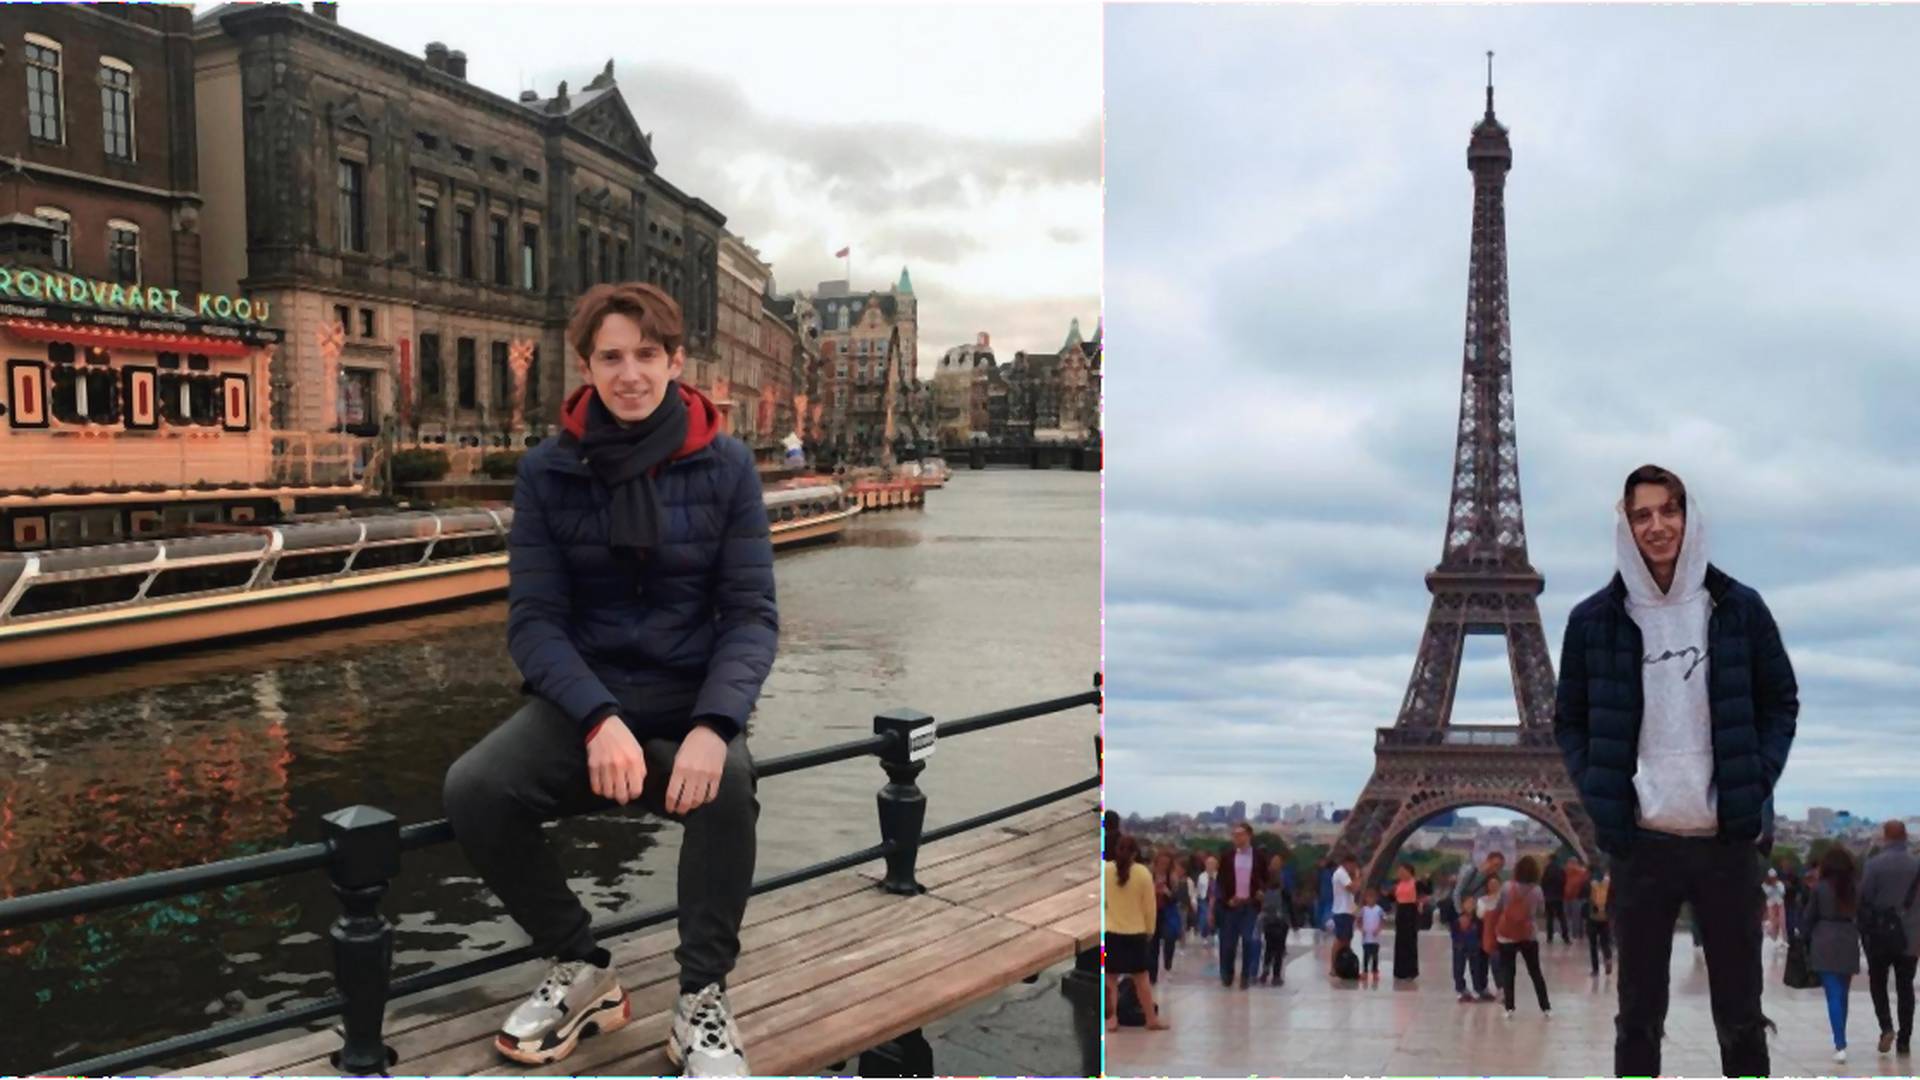 Na Instagrame fejkoval svoje dovolenky po Európe: Desí ma, koľko ľudí tomu uverilo